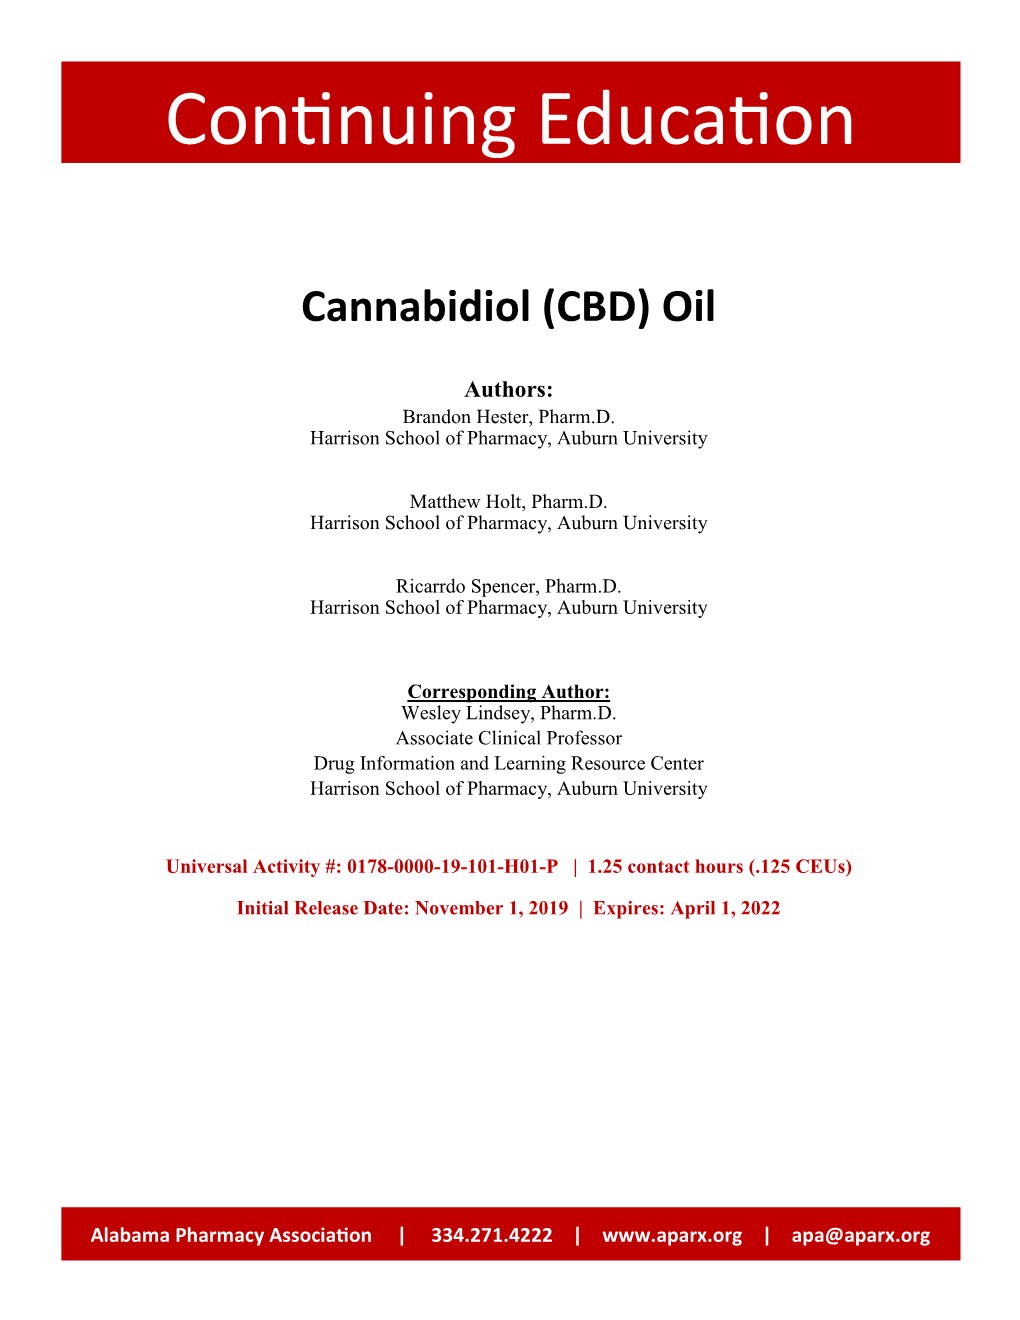 Cannabidiol (CBD) Oil